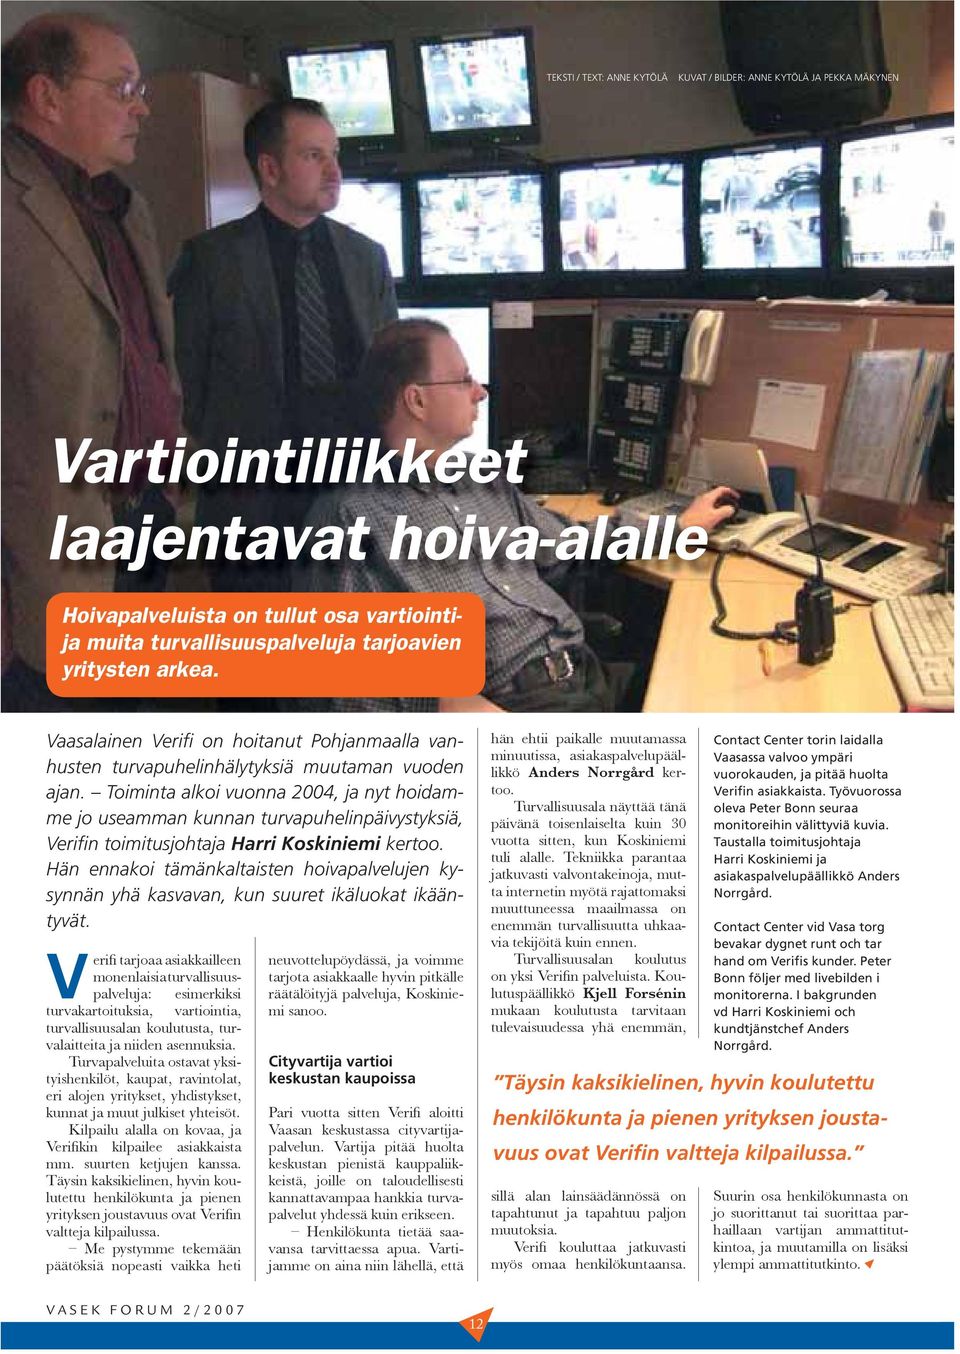 Toiminta alkoi vuonna 2004, ja nyt hoidamme jo useamman kunnan turvapuhelinpäivystyksiä, Verifin toimitusjohtaja Harri Koskiniemi kertoo.